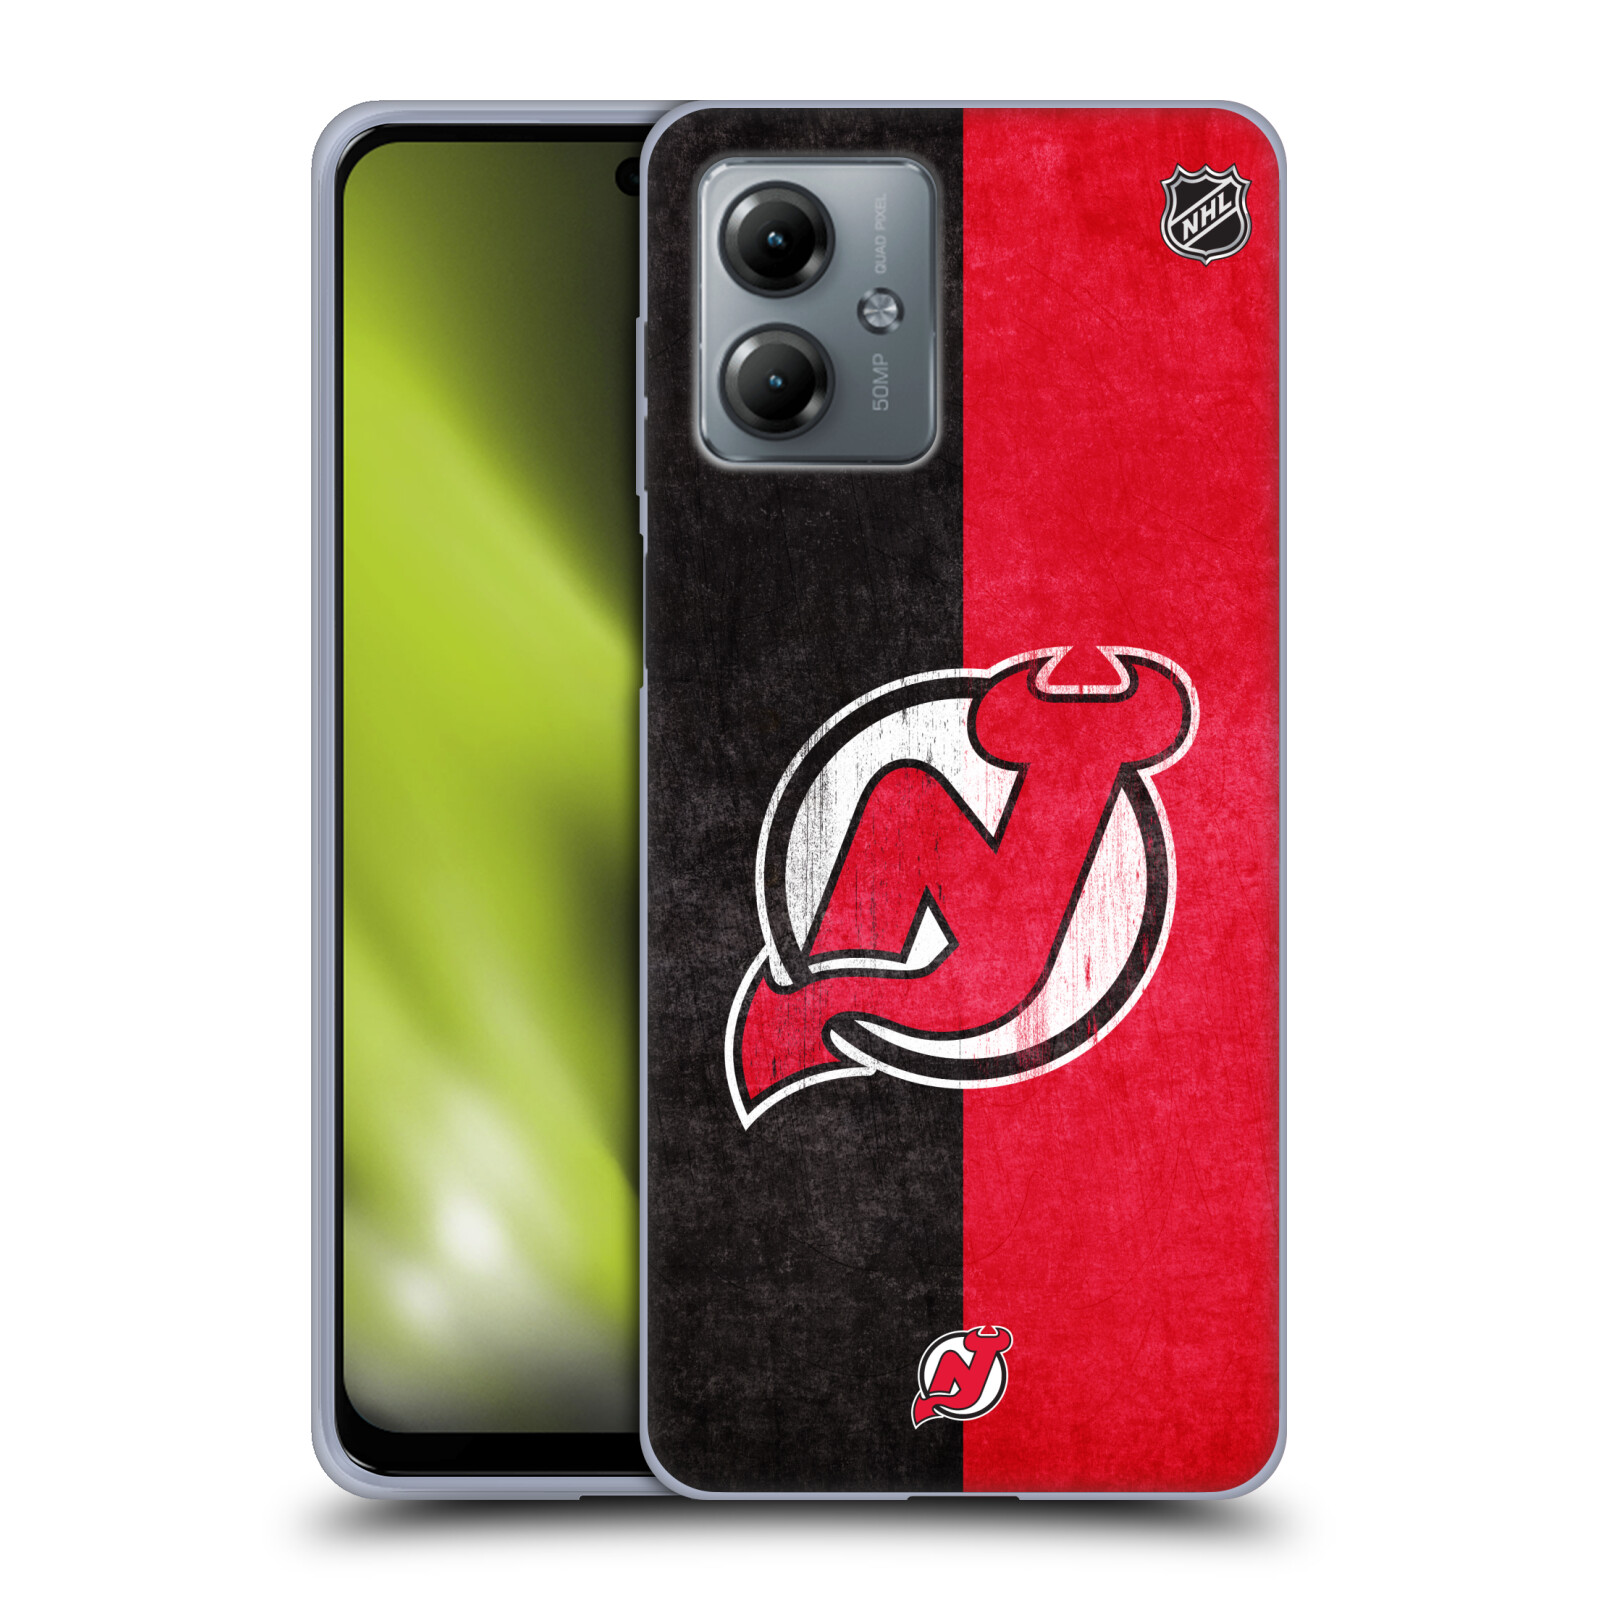 Silikonové pouzdro na mobil Motorola Moto G14 - NHL - Půlené logo New Jersey Devils (Silikonový kryt, obal, pouzdro na mobilní telefon Motorola Moto G14 s licencovaným motivem NHL - Půlené logo New Jersey Devils)